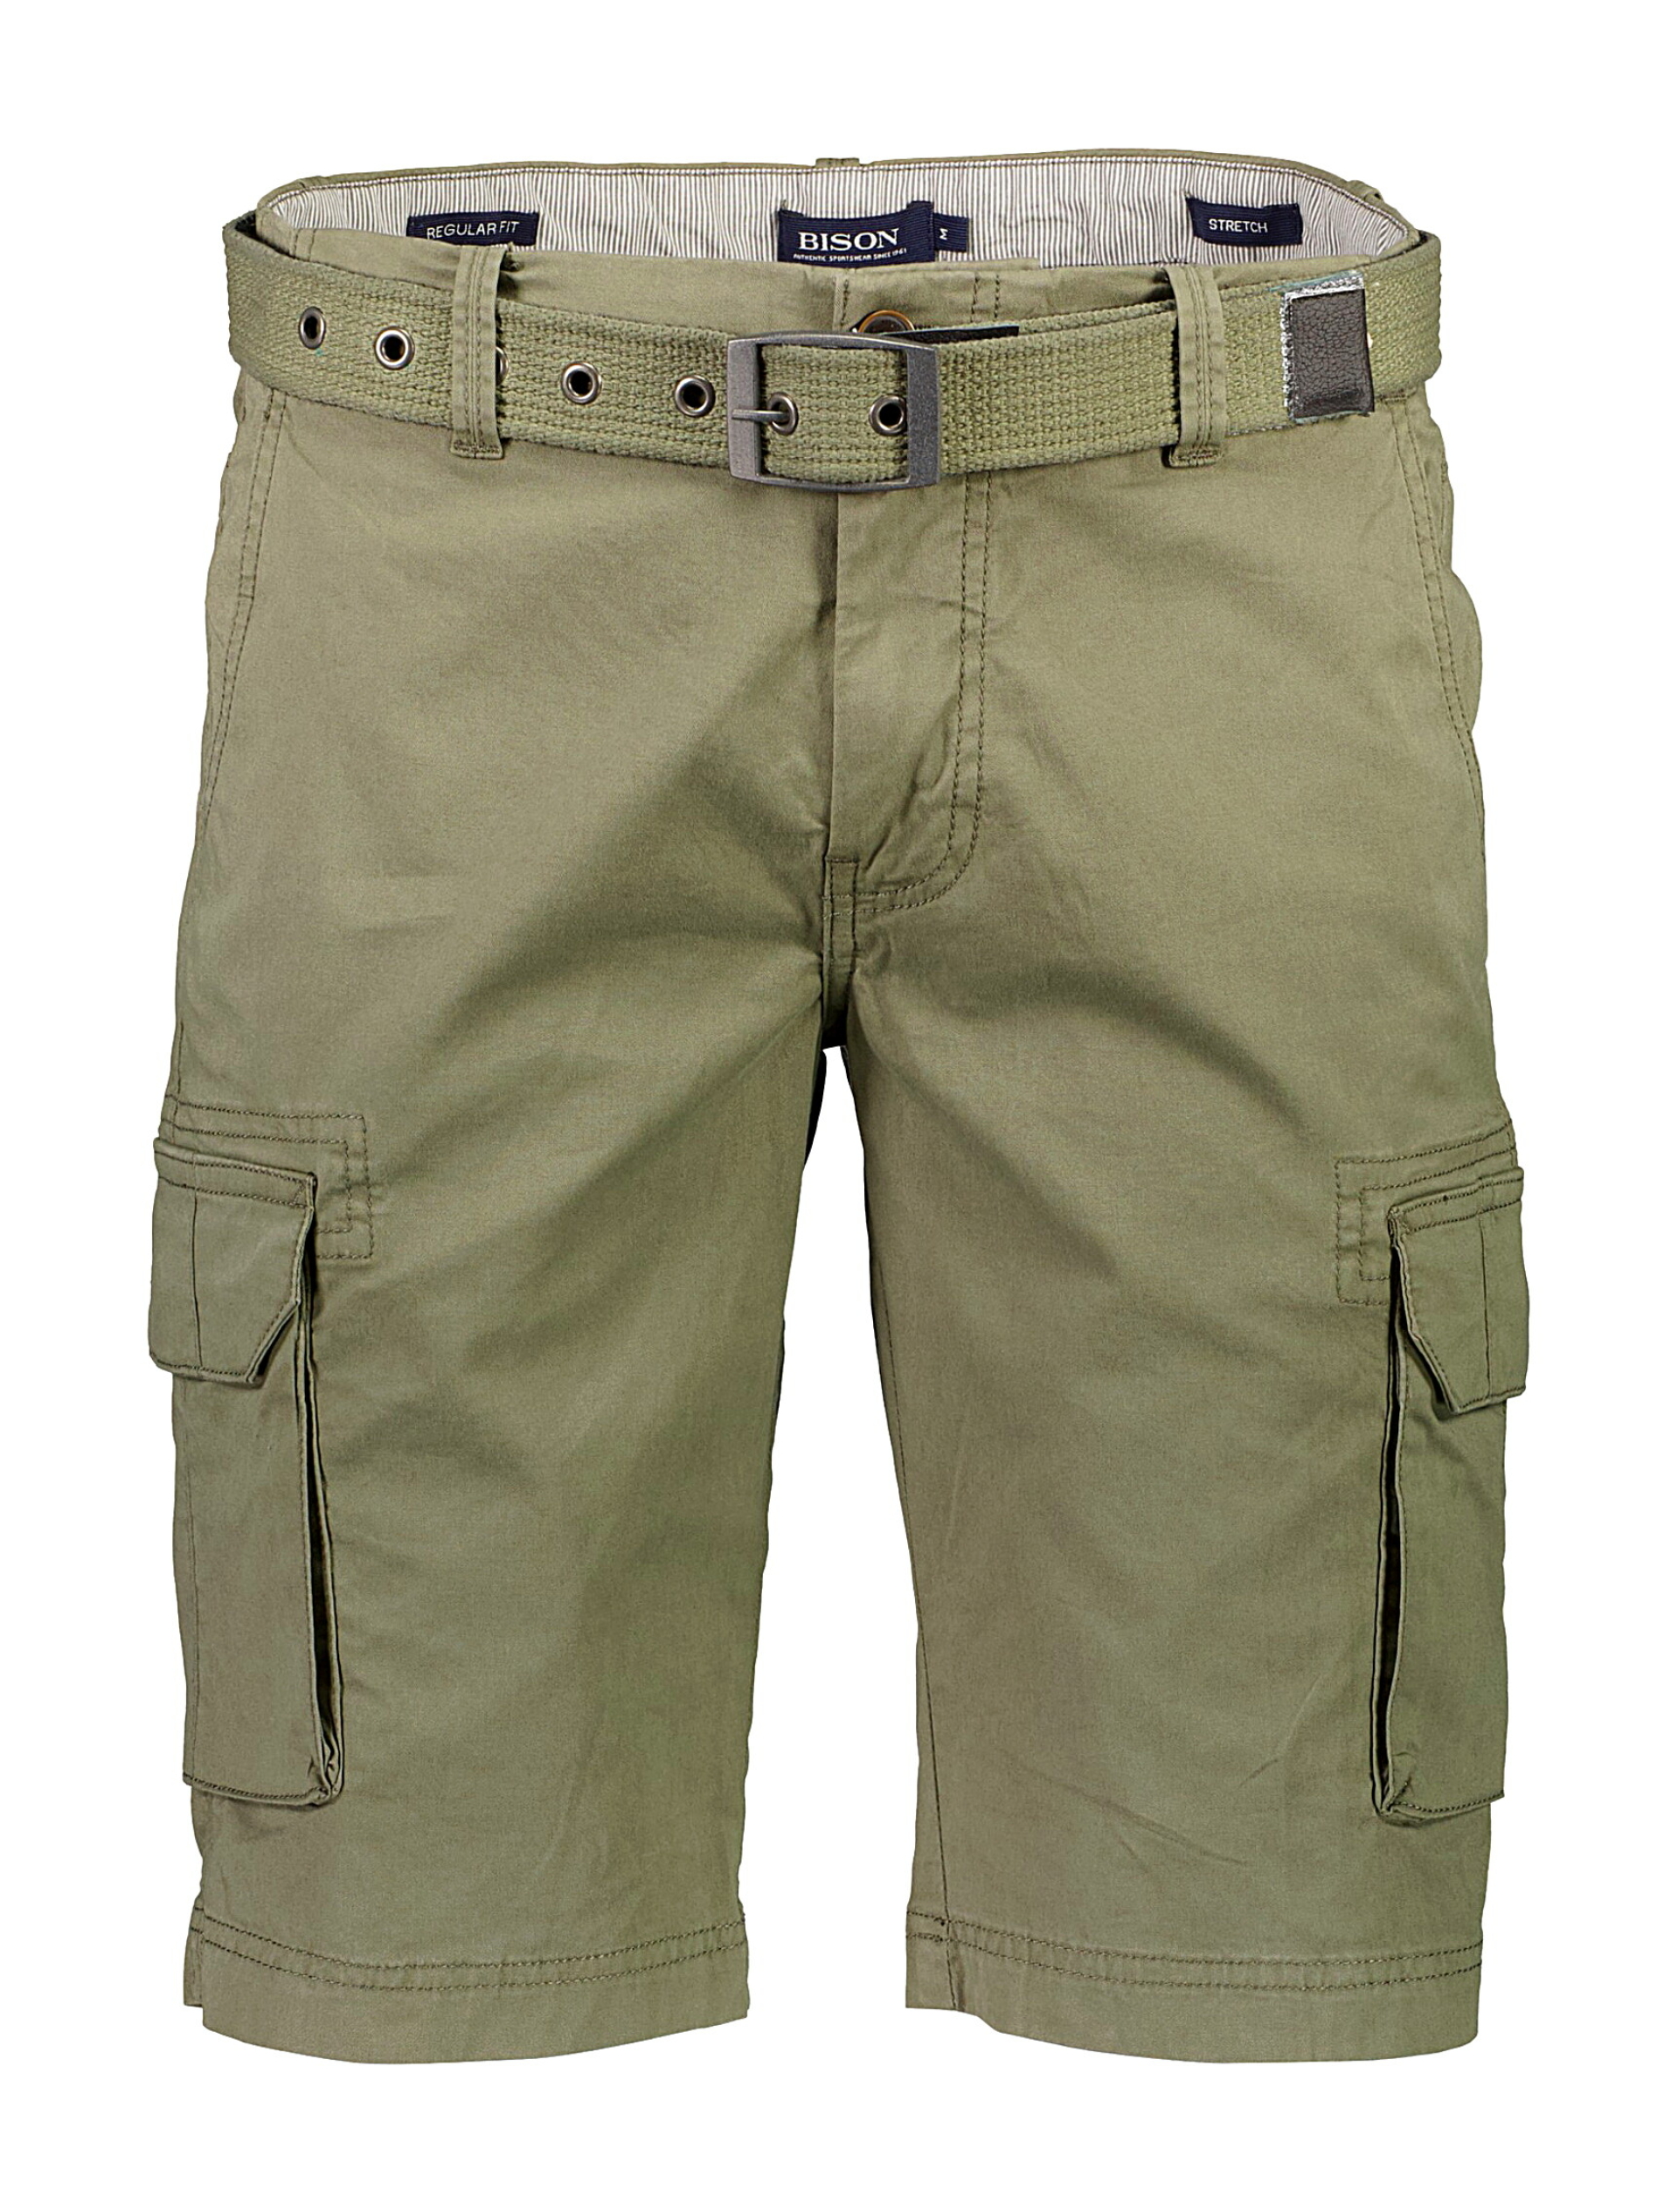 Bison Cargo shorts grön / army